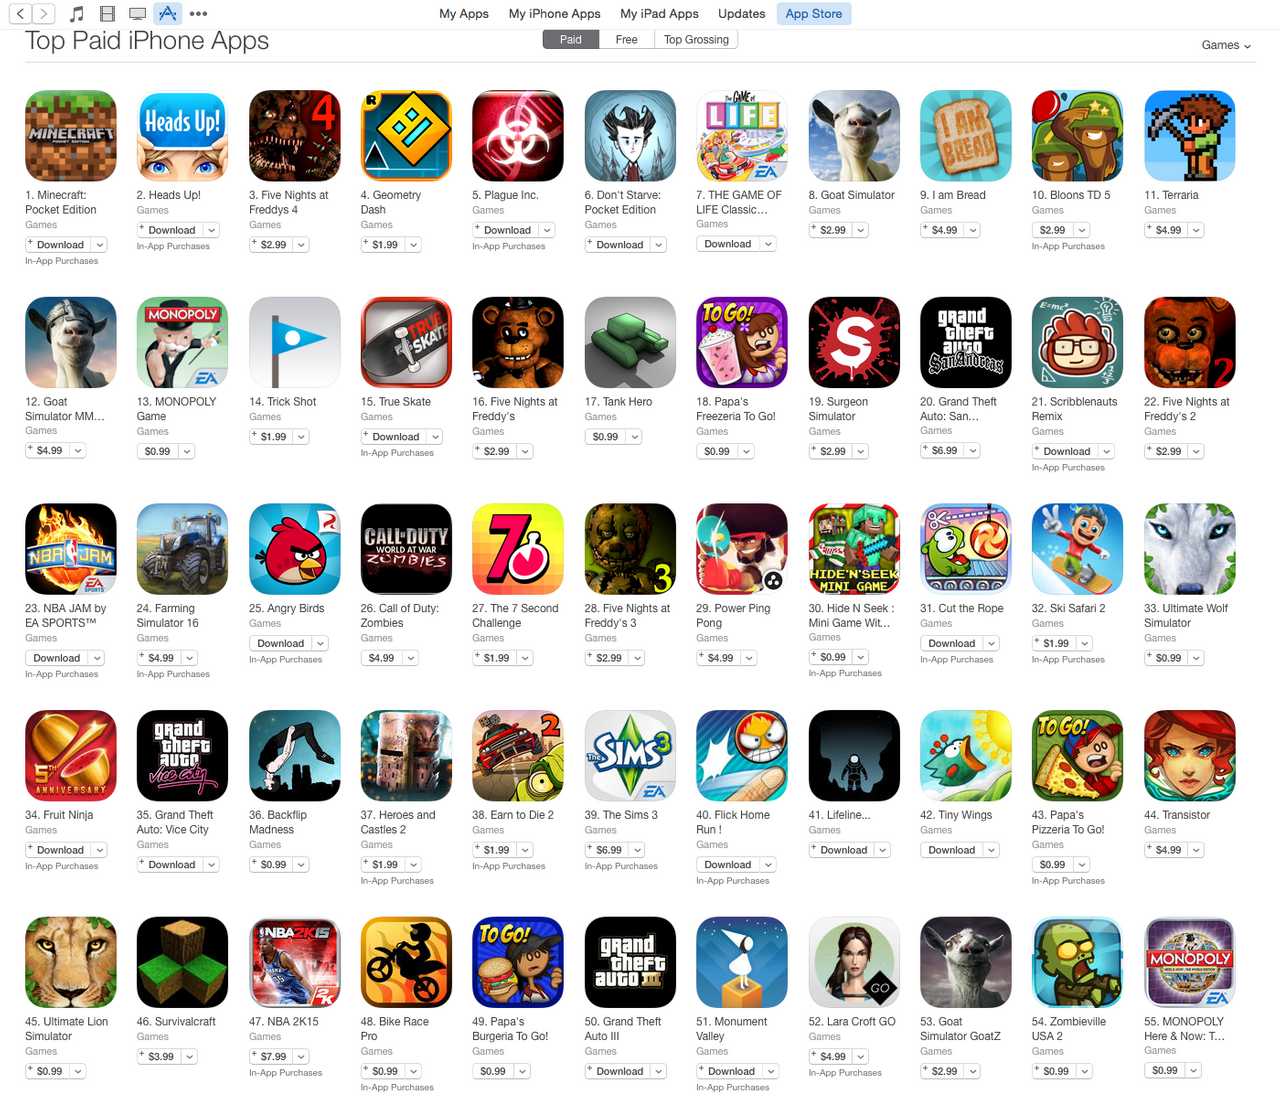 Iphone games download. Популярные игры в APPSTORE. Приложение с играми для айфона. Какие популярные игры. Логотипы популярных игр.